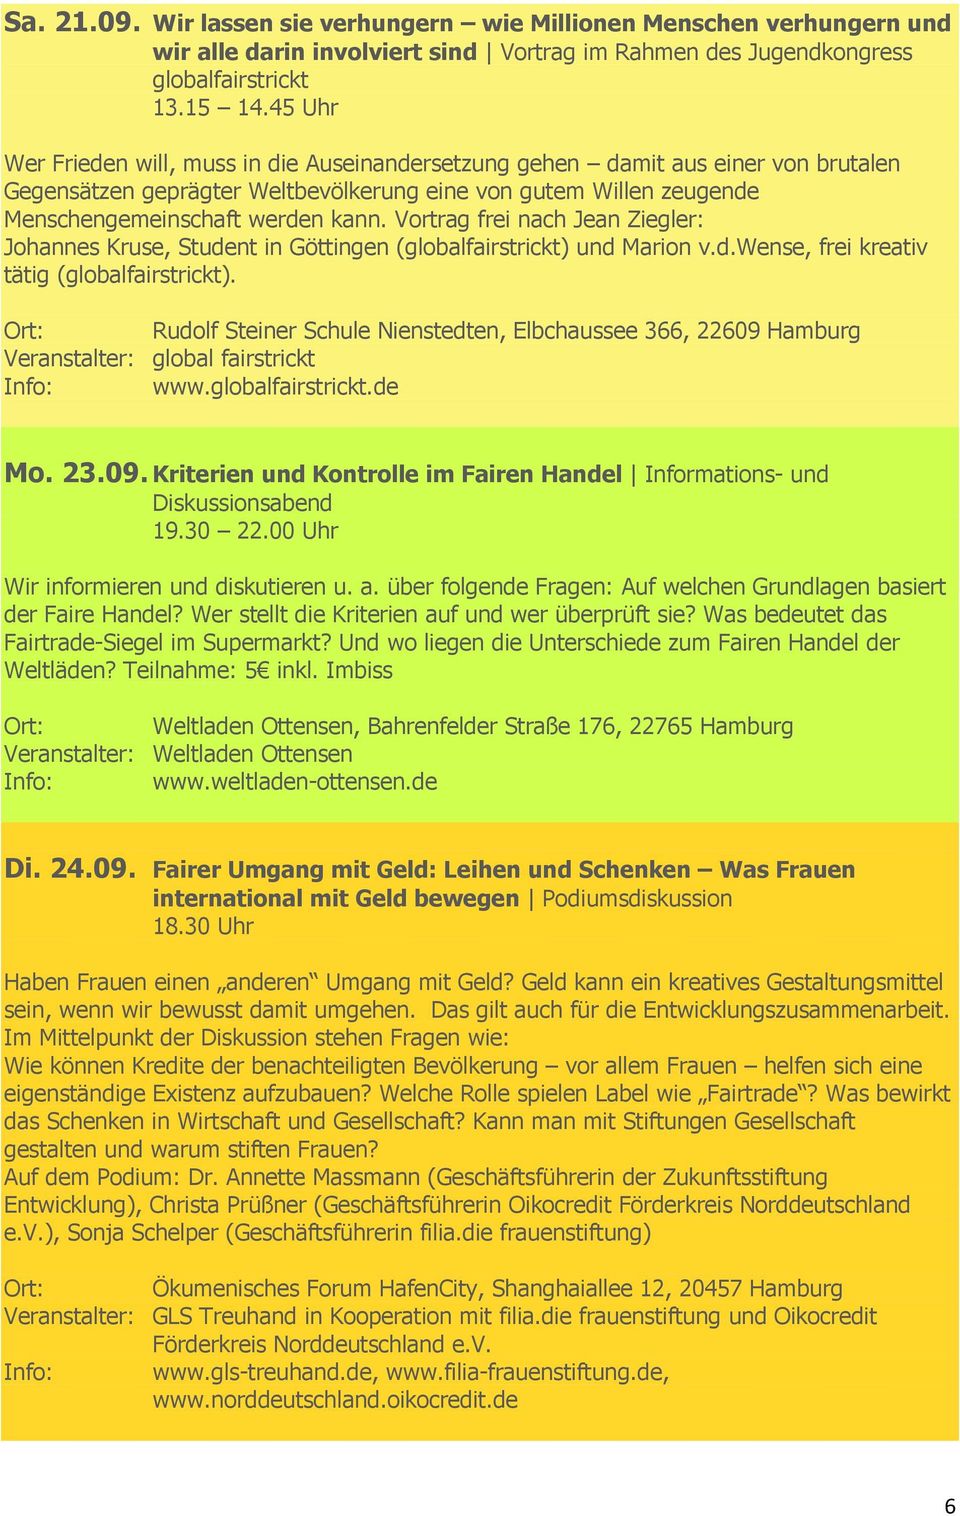 Vortrag frei nach Jean Ziegler: Johannes Kruse, Student in Göttingen (globalfairstrickt) und Marion v.d.wense, frei kreativ tätig (globalfairstrickt).